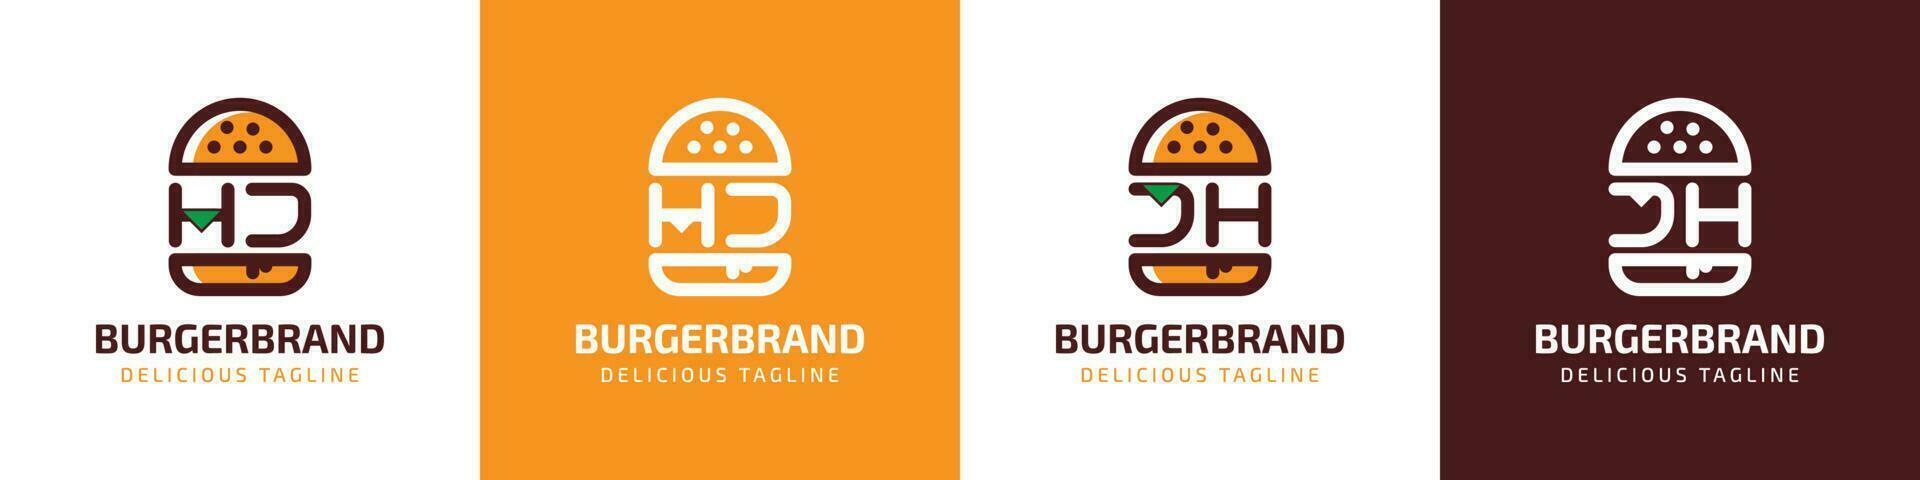 carta hj e jh hamburguer logotipo, adequado para qualquer o negócio relacionado para hamburguer com hj ou jh iniciais. vetor